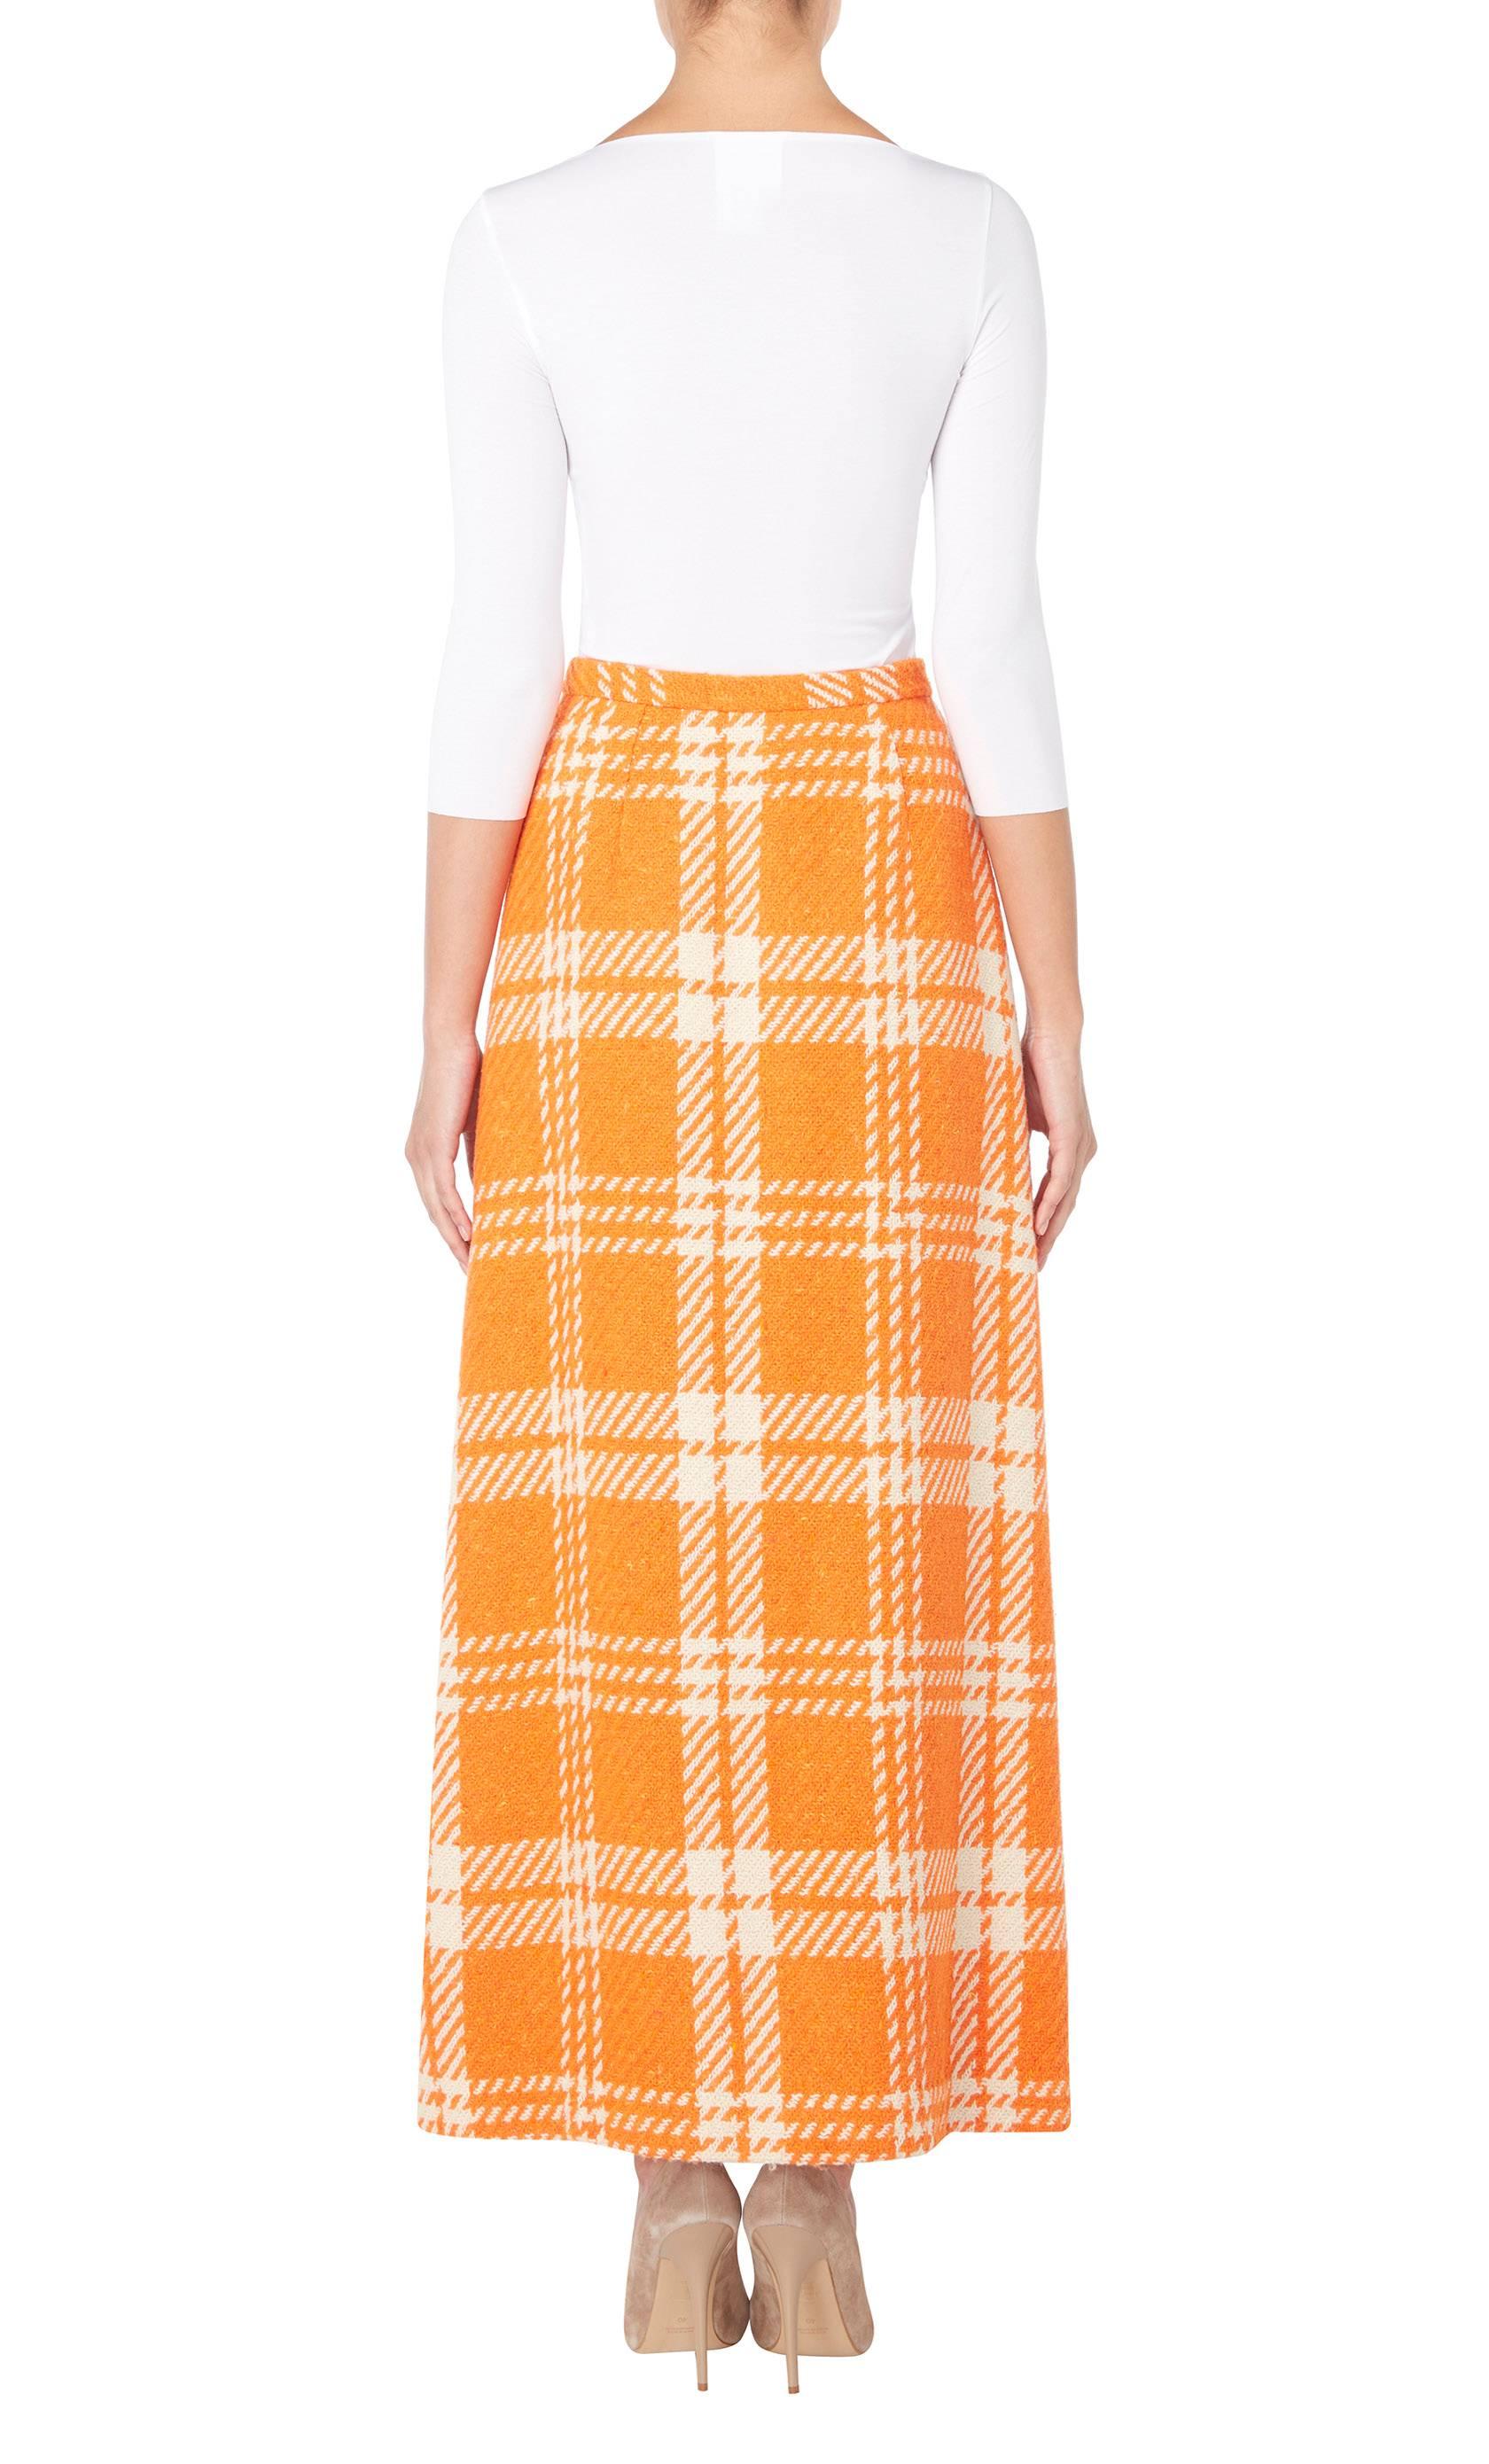 Orange Great Unknown orange houndstooth skirt, circa 1965